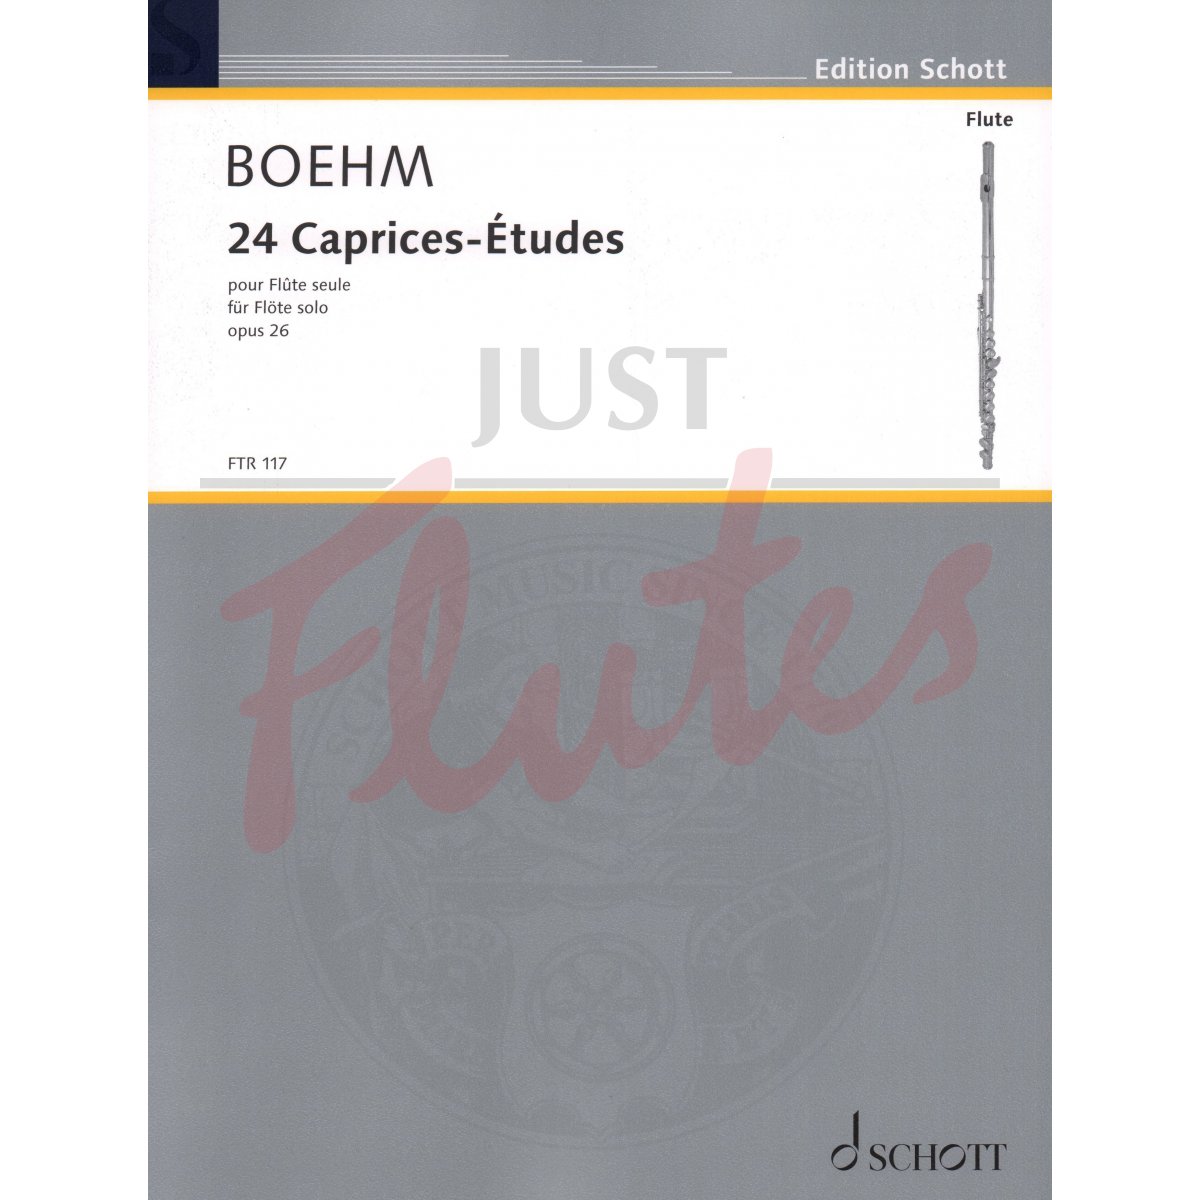 24 Caprices-Etudes for Flute